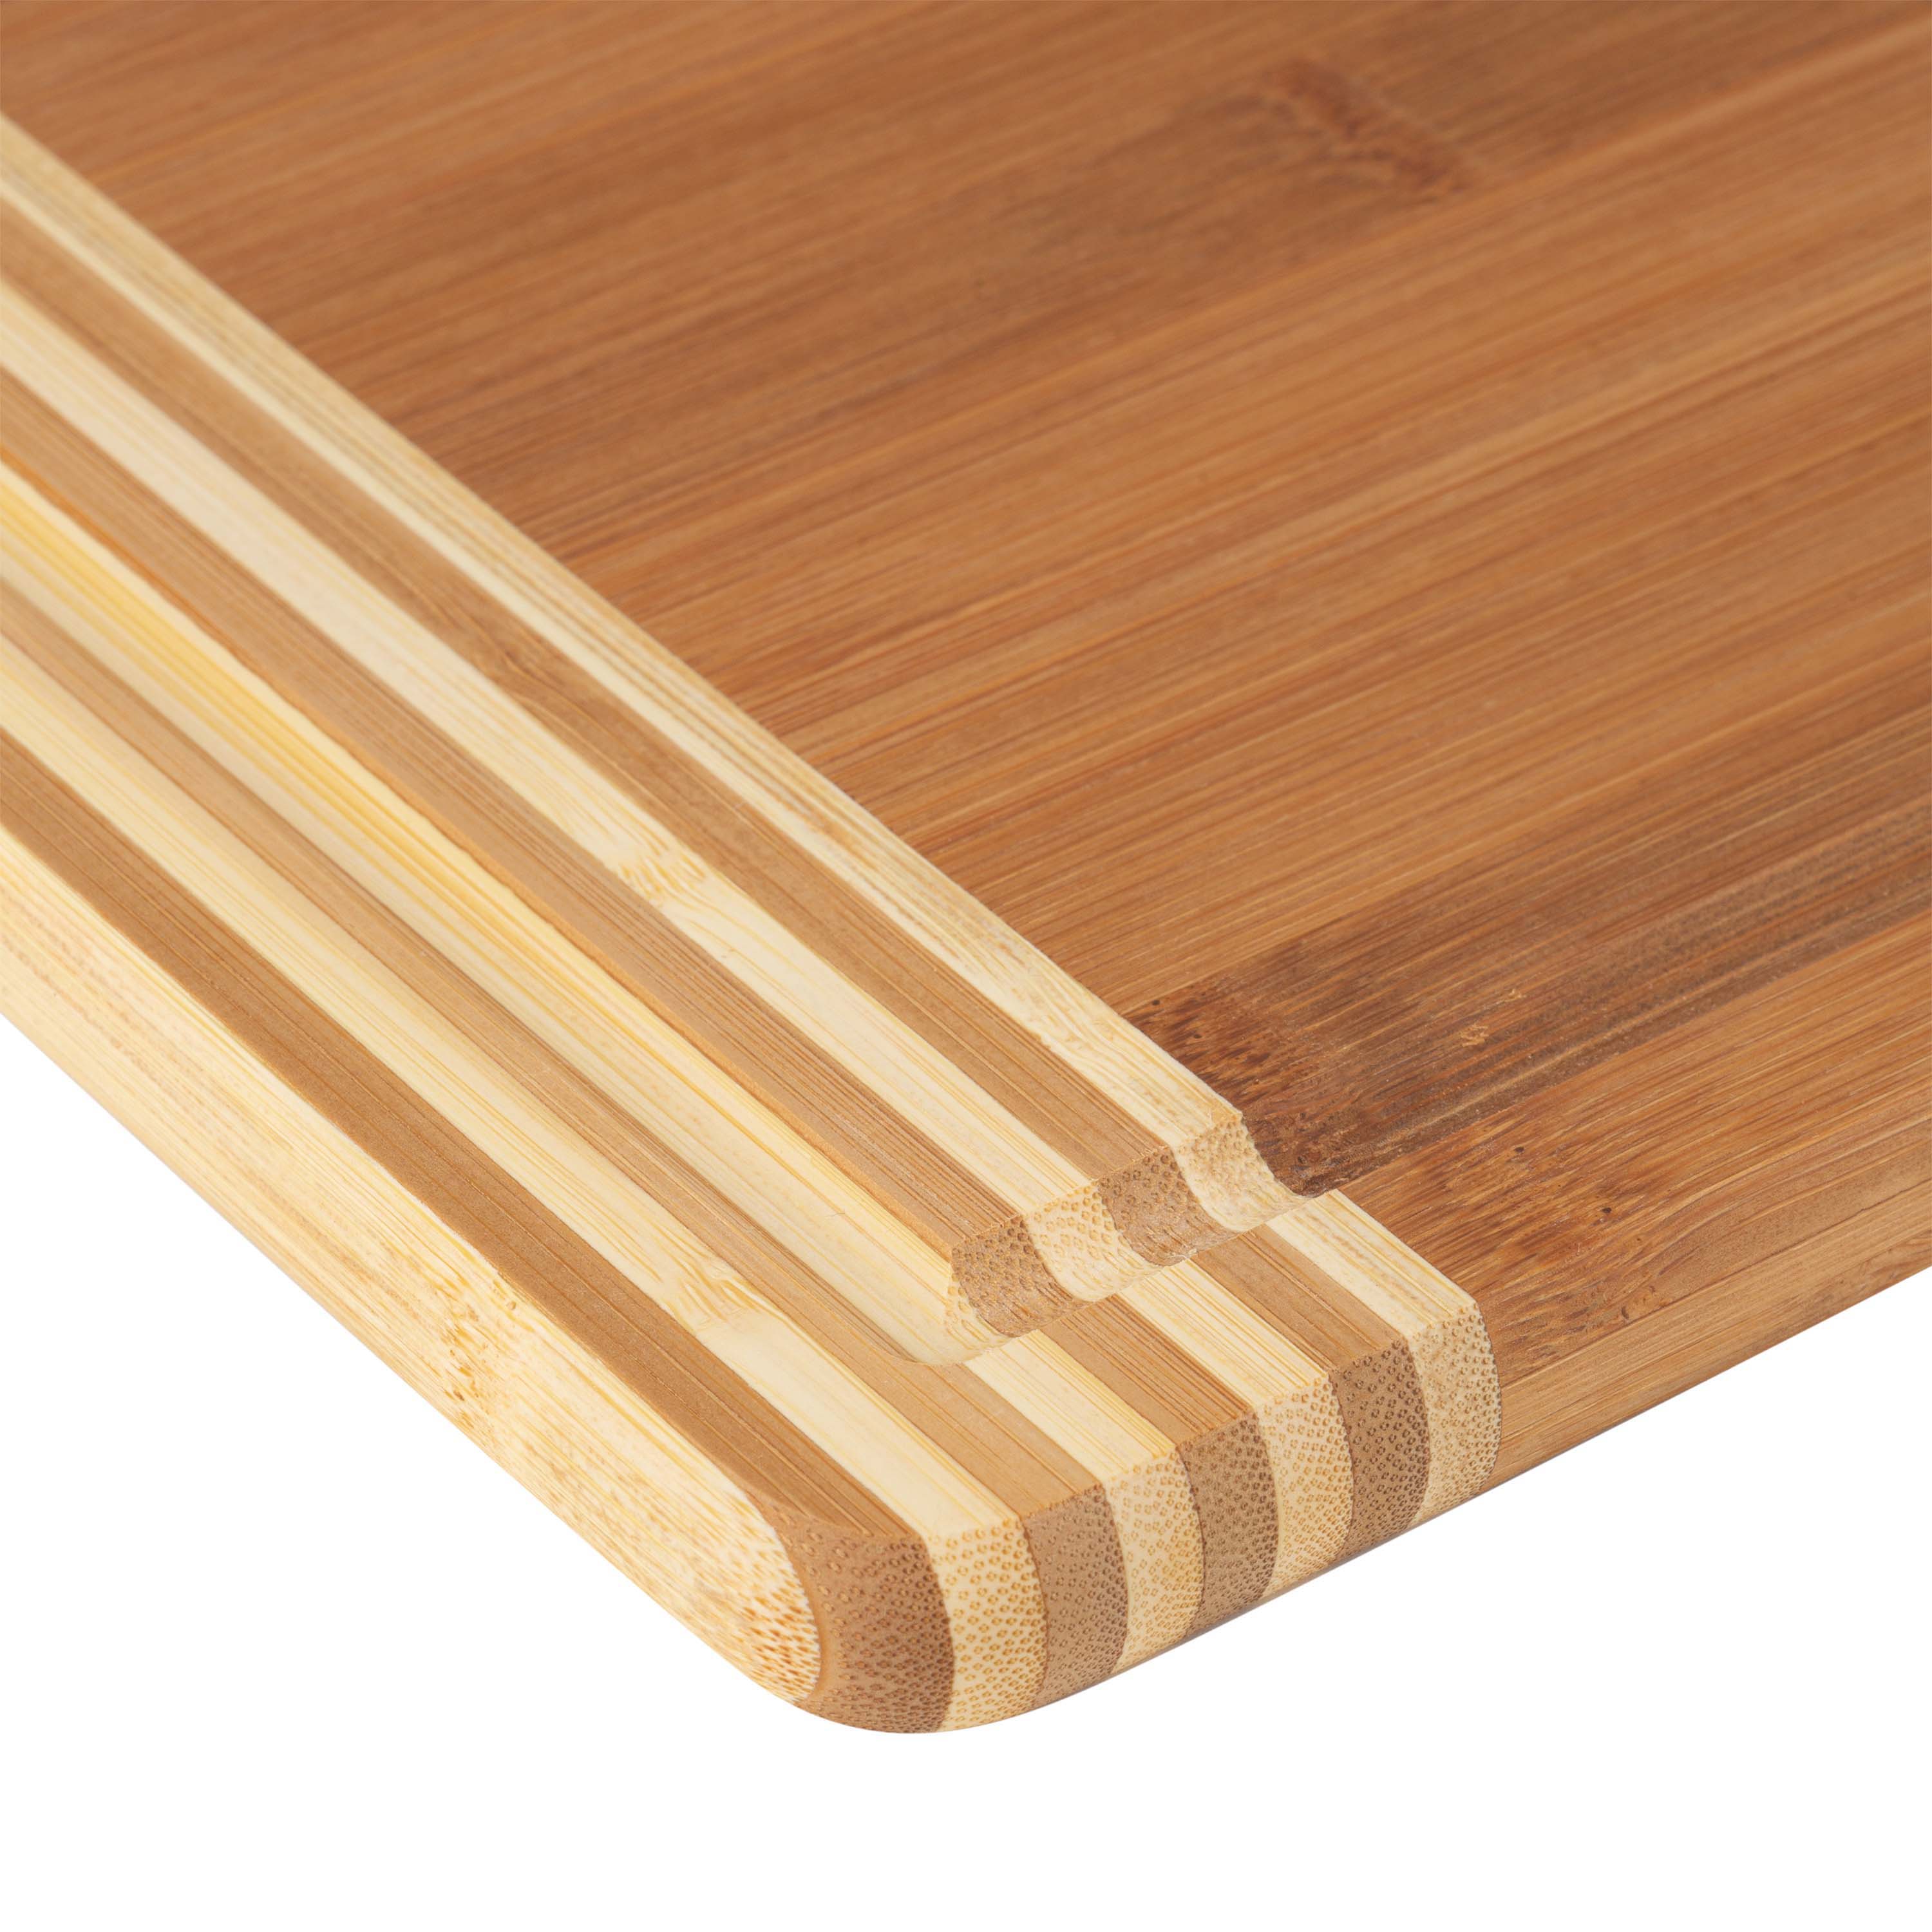 BLANCO Cutting Board, Bamboo Solis, 424(L) x 280(W)mm